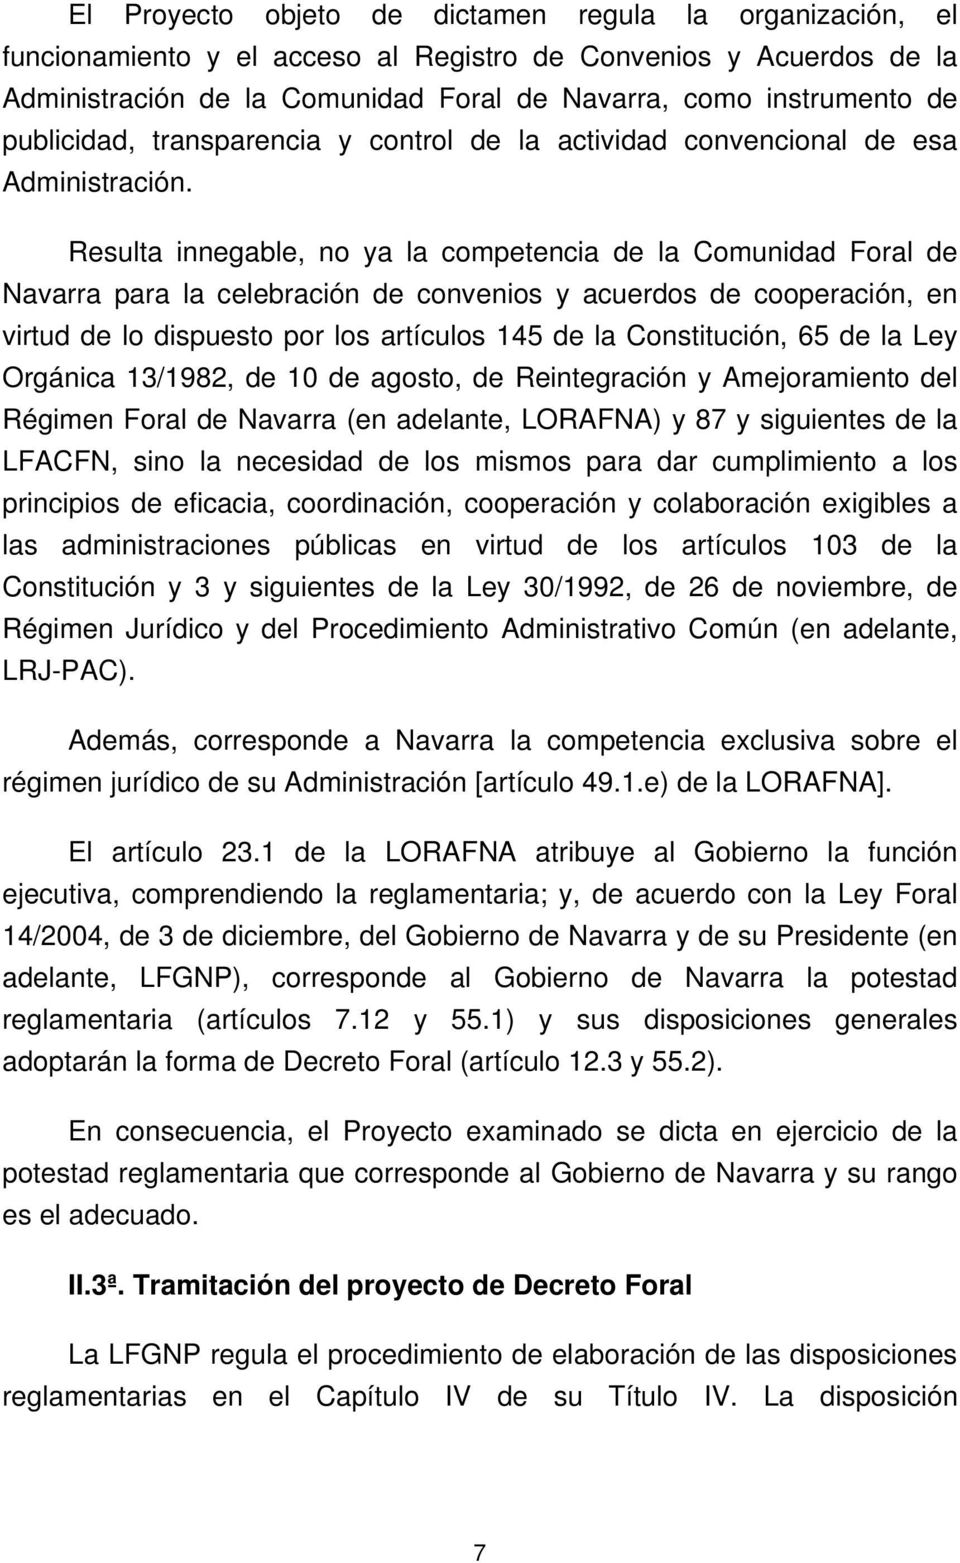 Resulta innegable, no ya la competencia de la Comunidad Foral de Navarra para la celebración de convenios y acuerdos de cooperación, en virtud de lo dispuesto por los artículos 145 de la